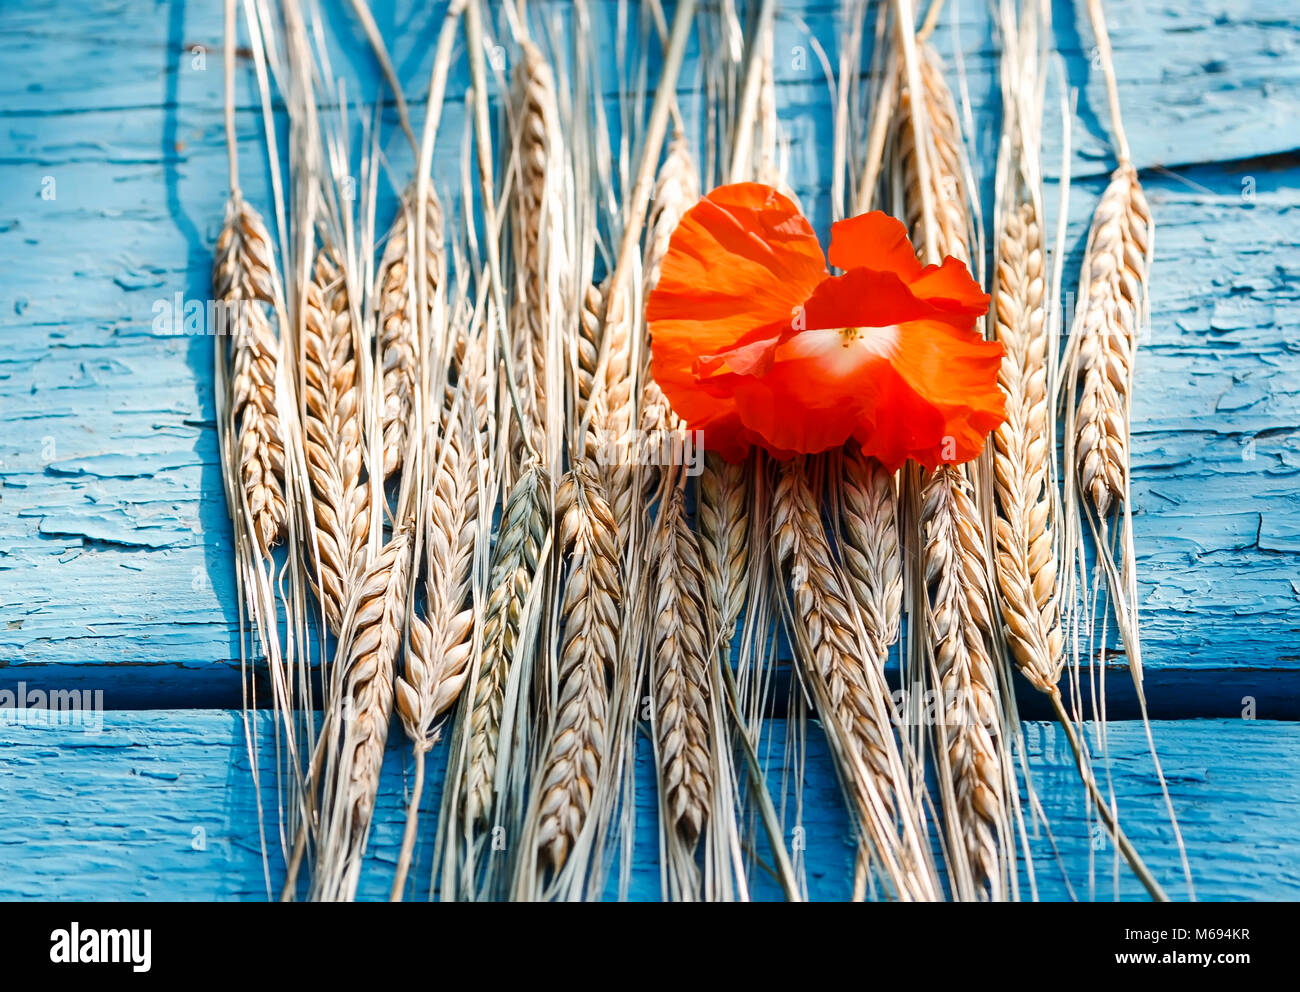 Un bodegón de maduras Golden mazorcas de maíz y una amapola roja brillante en el cuadro azul Foto de stock